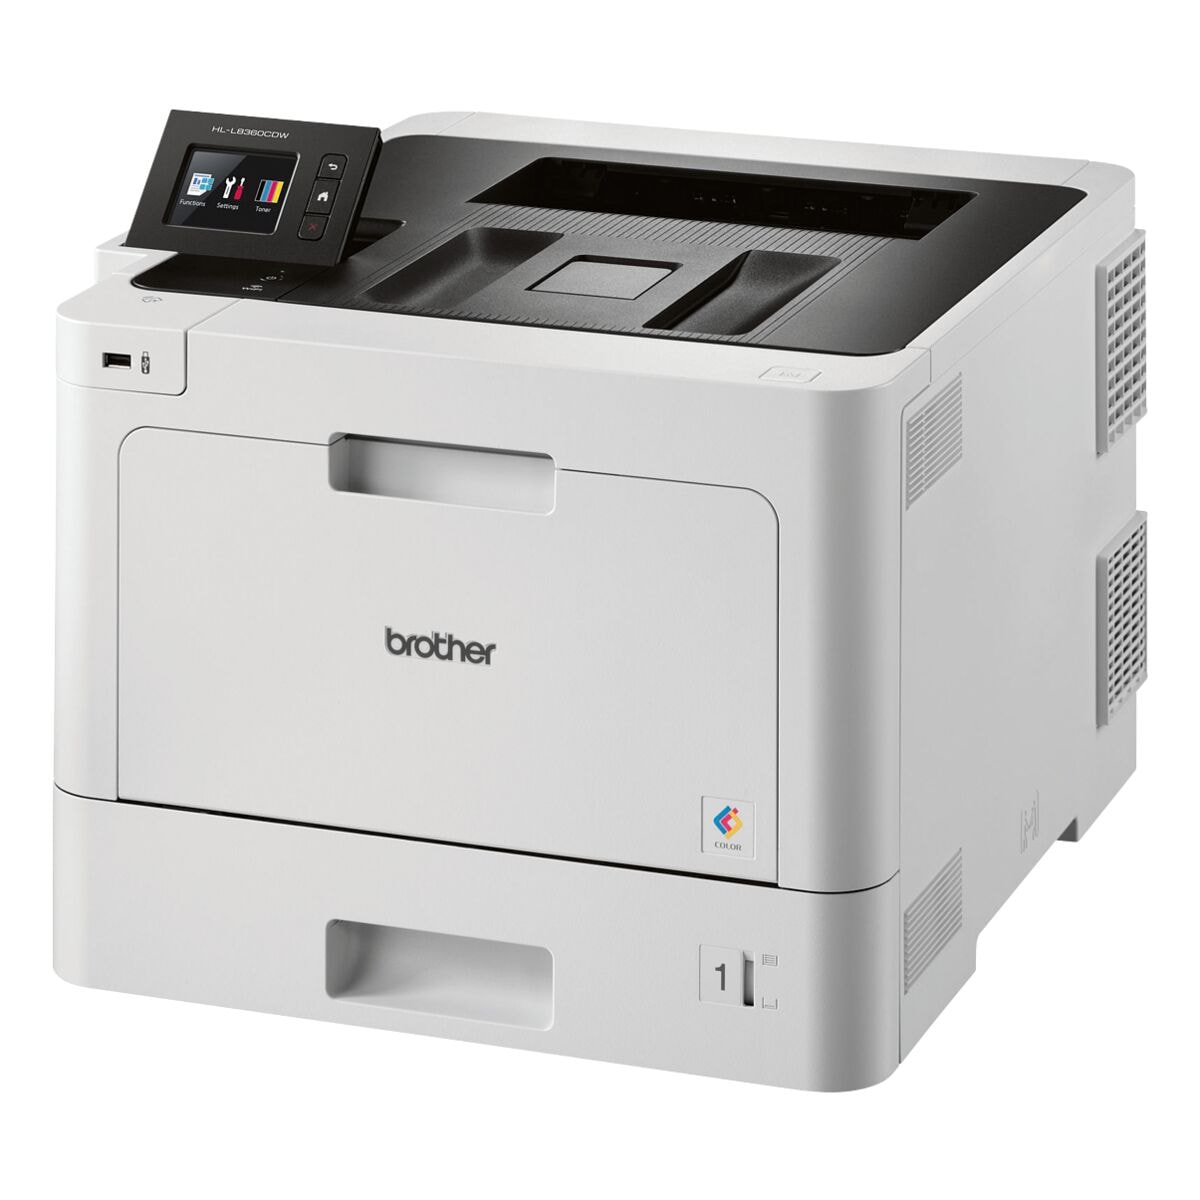 Brother HL-L8360CDW Laserdrucker, A4 Farb-Laserdrucker, 2400 x 600 dpi, mit LAN und WLAN